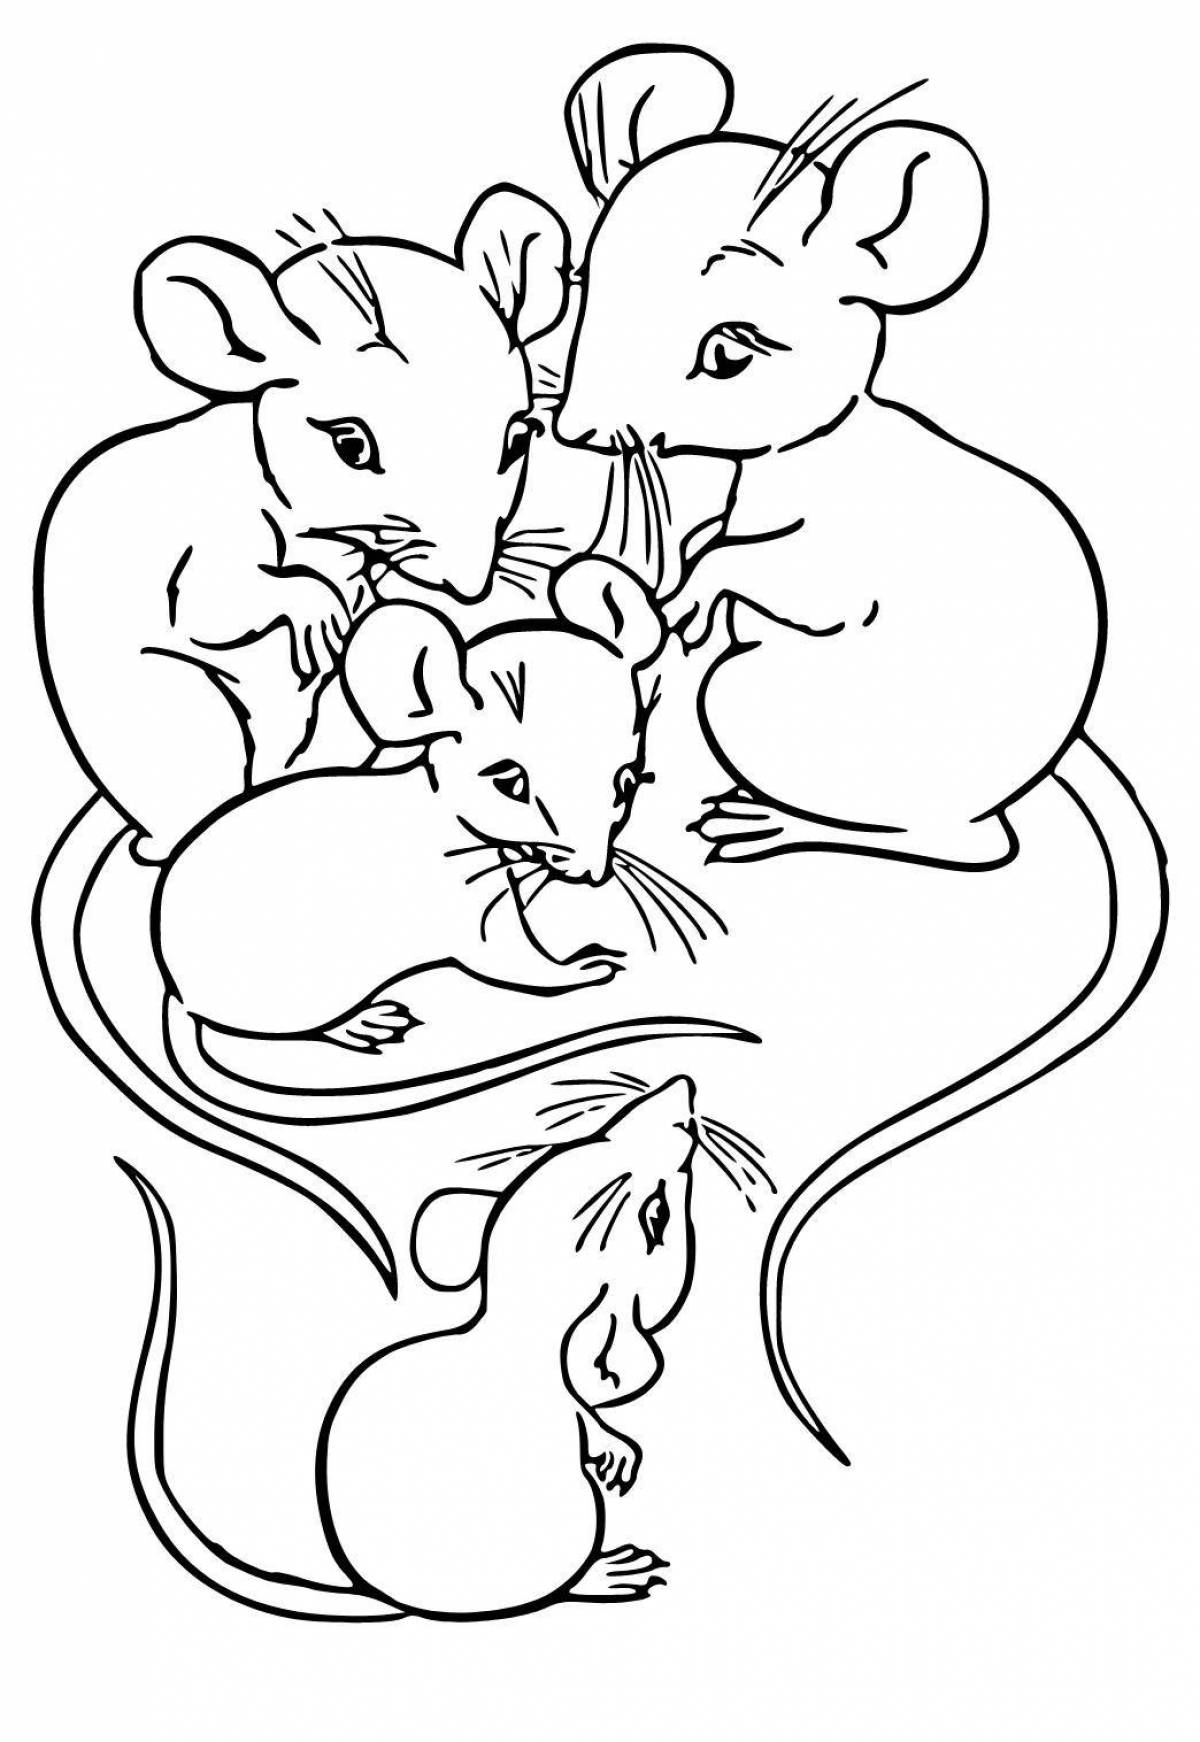 Творческая раскраска мышь для детей 2-3 лет